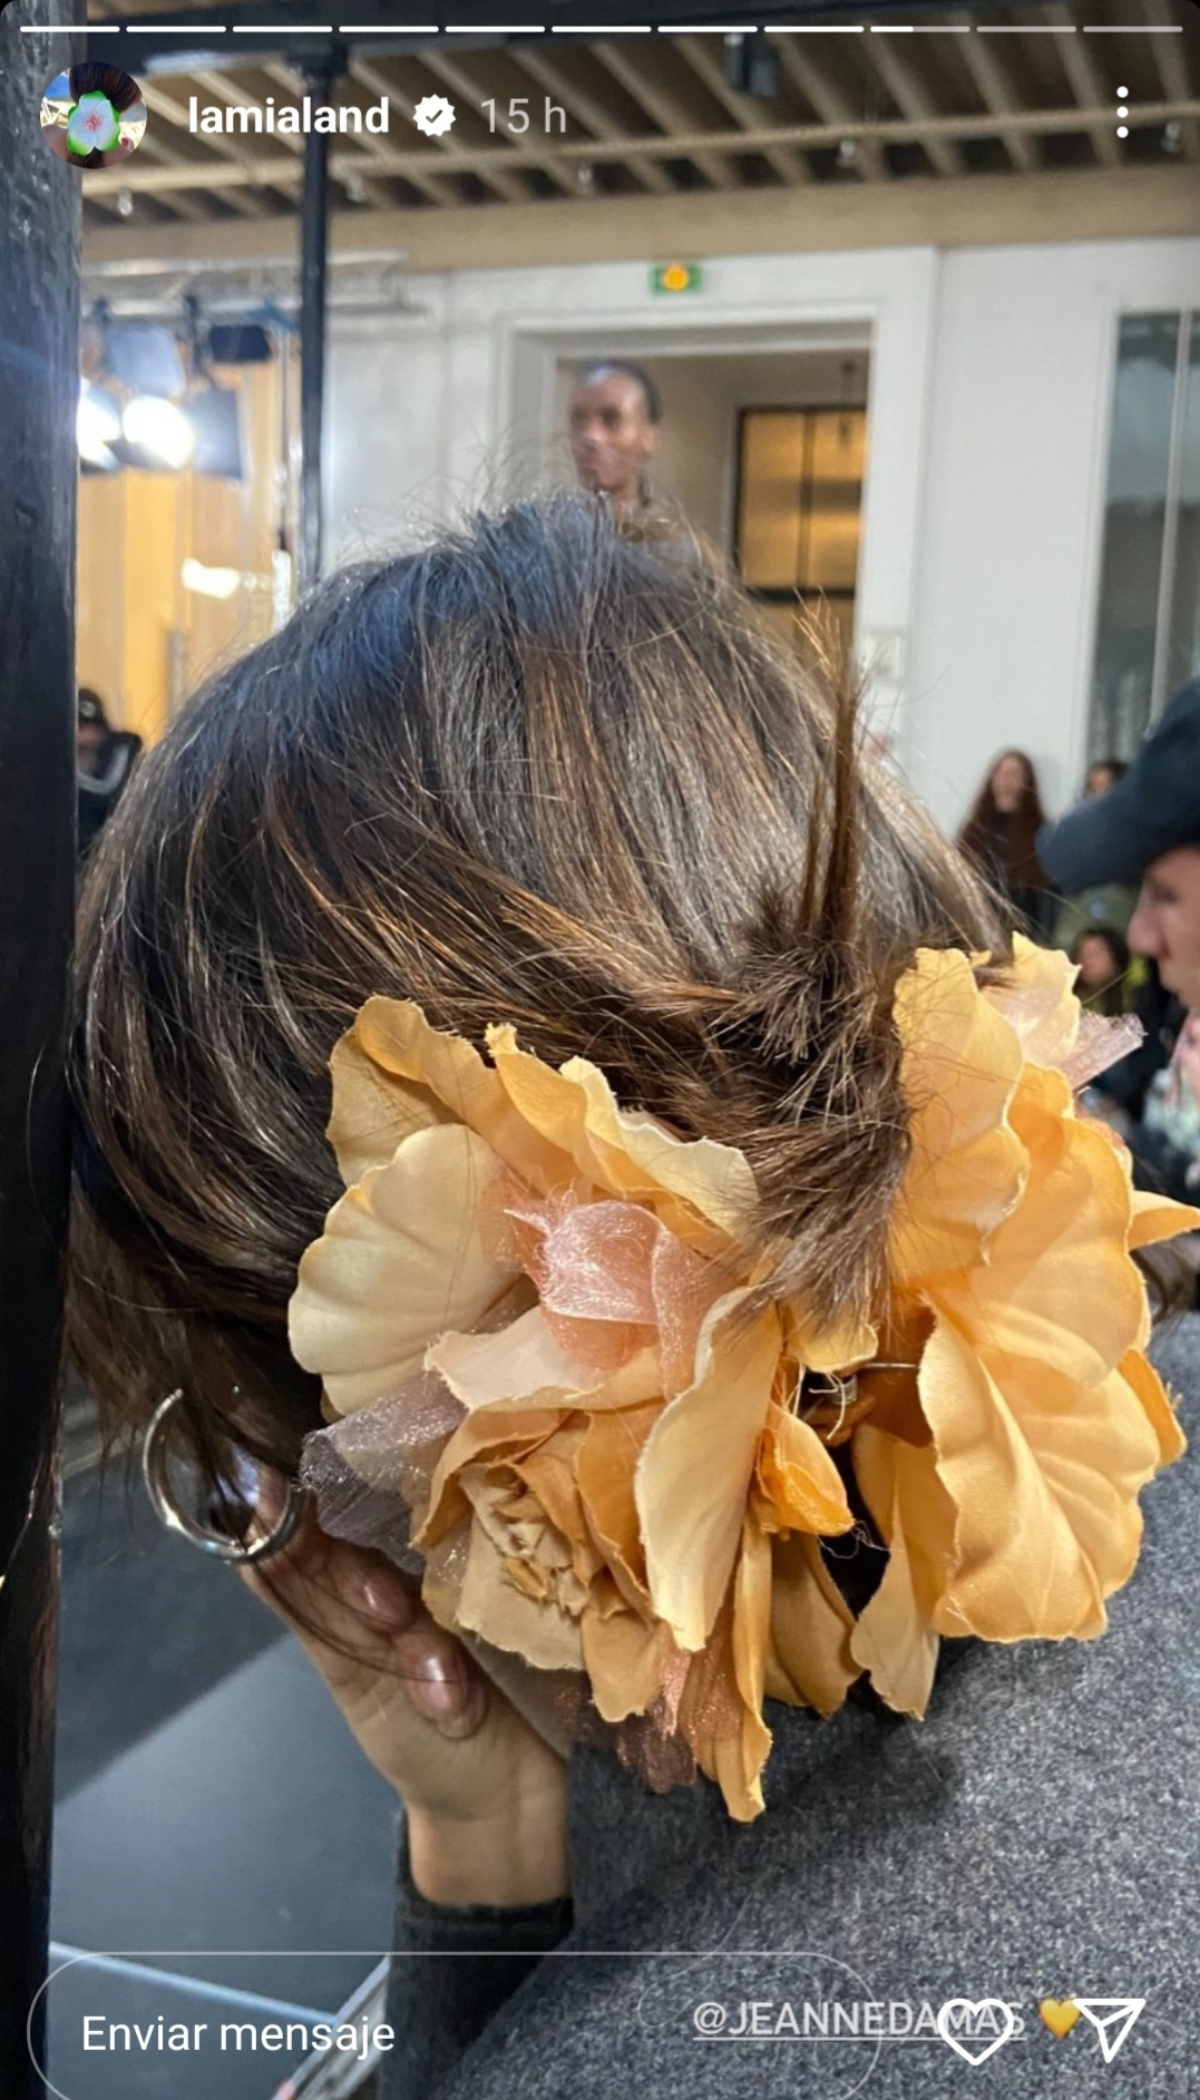 espiritual Mentalidad Analista Olvídate del lazo, este es el nuevo accesorio del pelo cool según la  parisina por excelencia | Telva.com